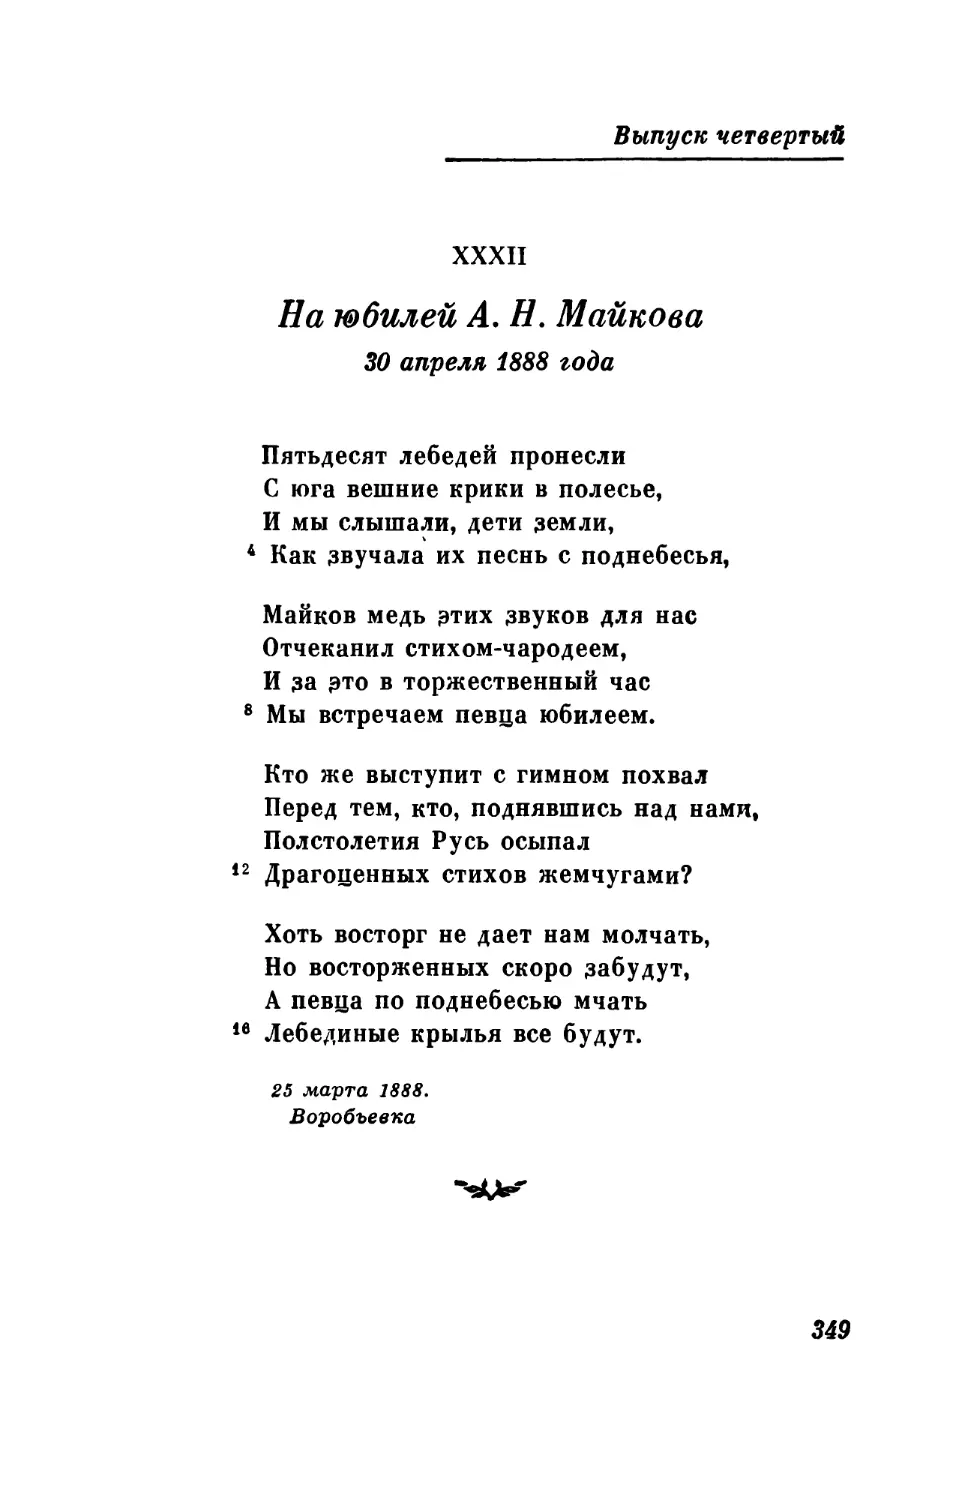 На юбилей А. Н. Майкова. 30 апреля 1888 года